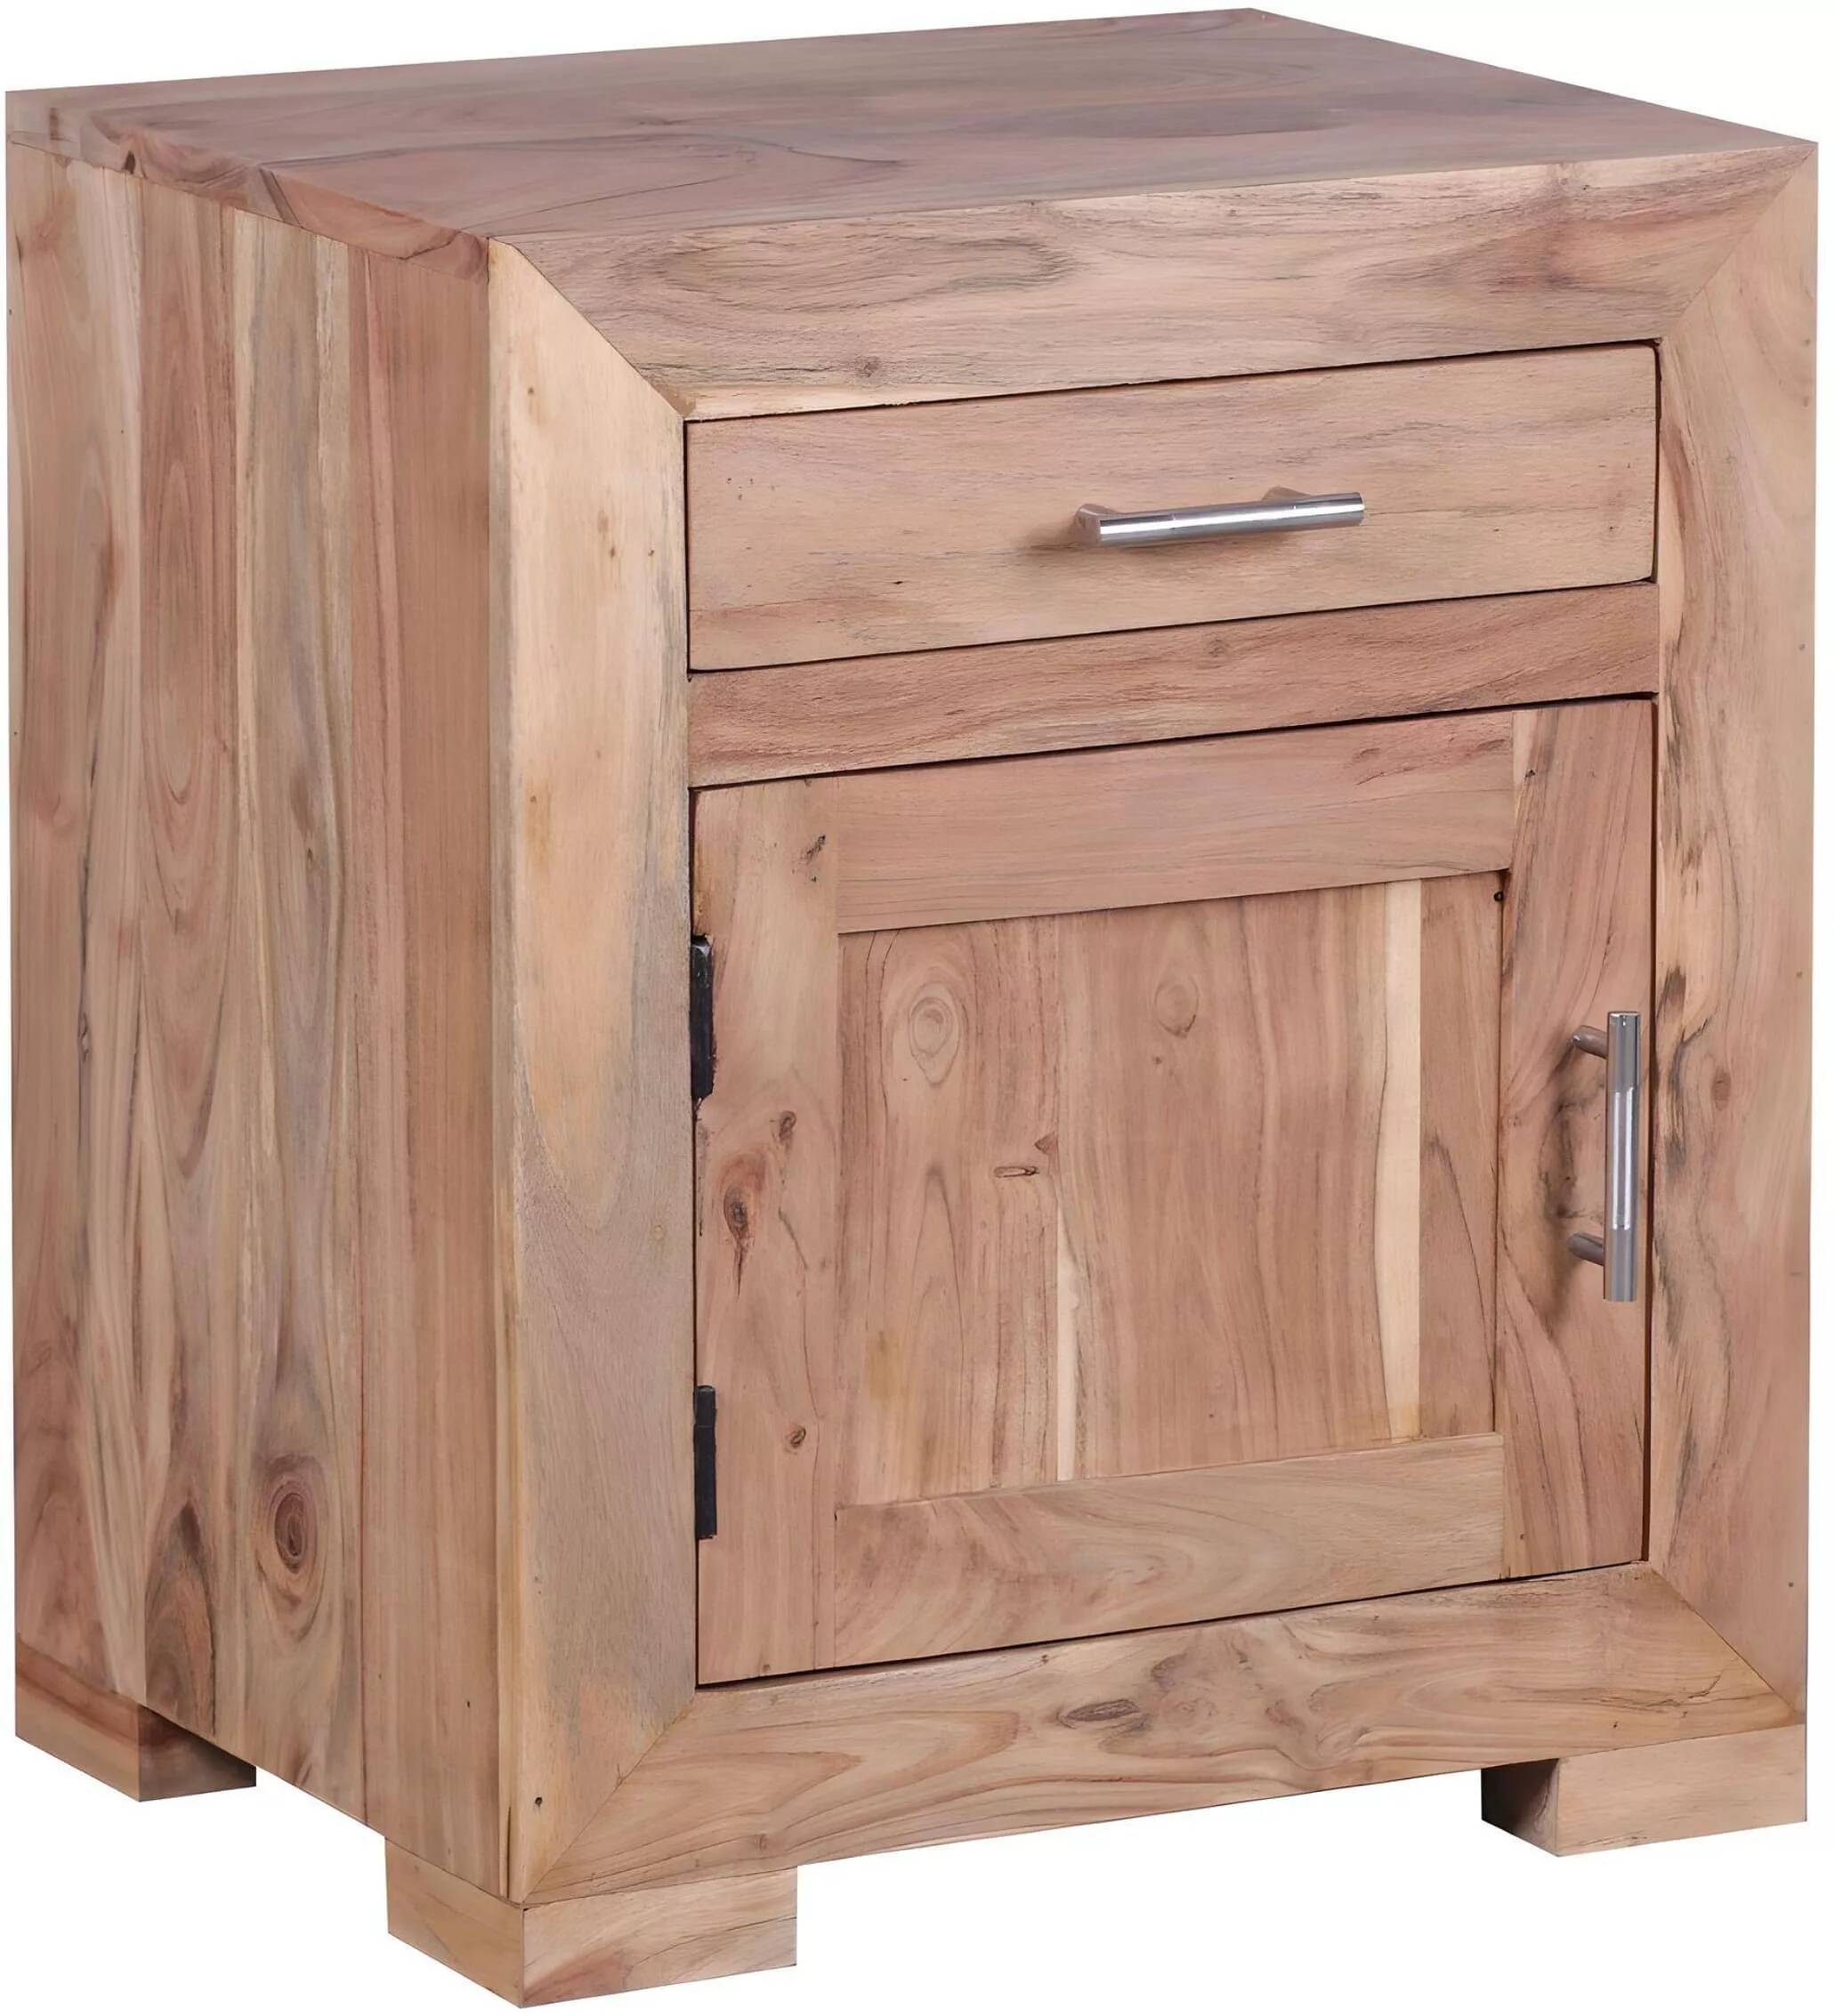 Table de chevet en bois massif acacia 1 porte 1 tiroir